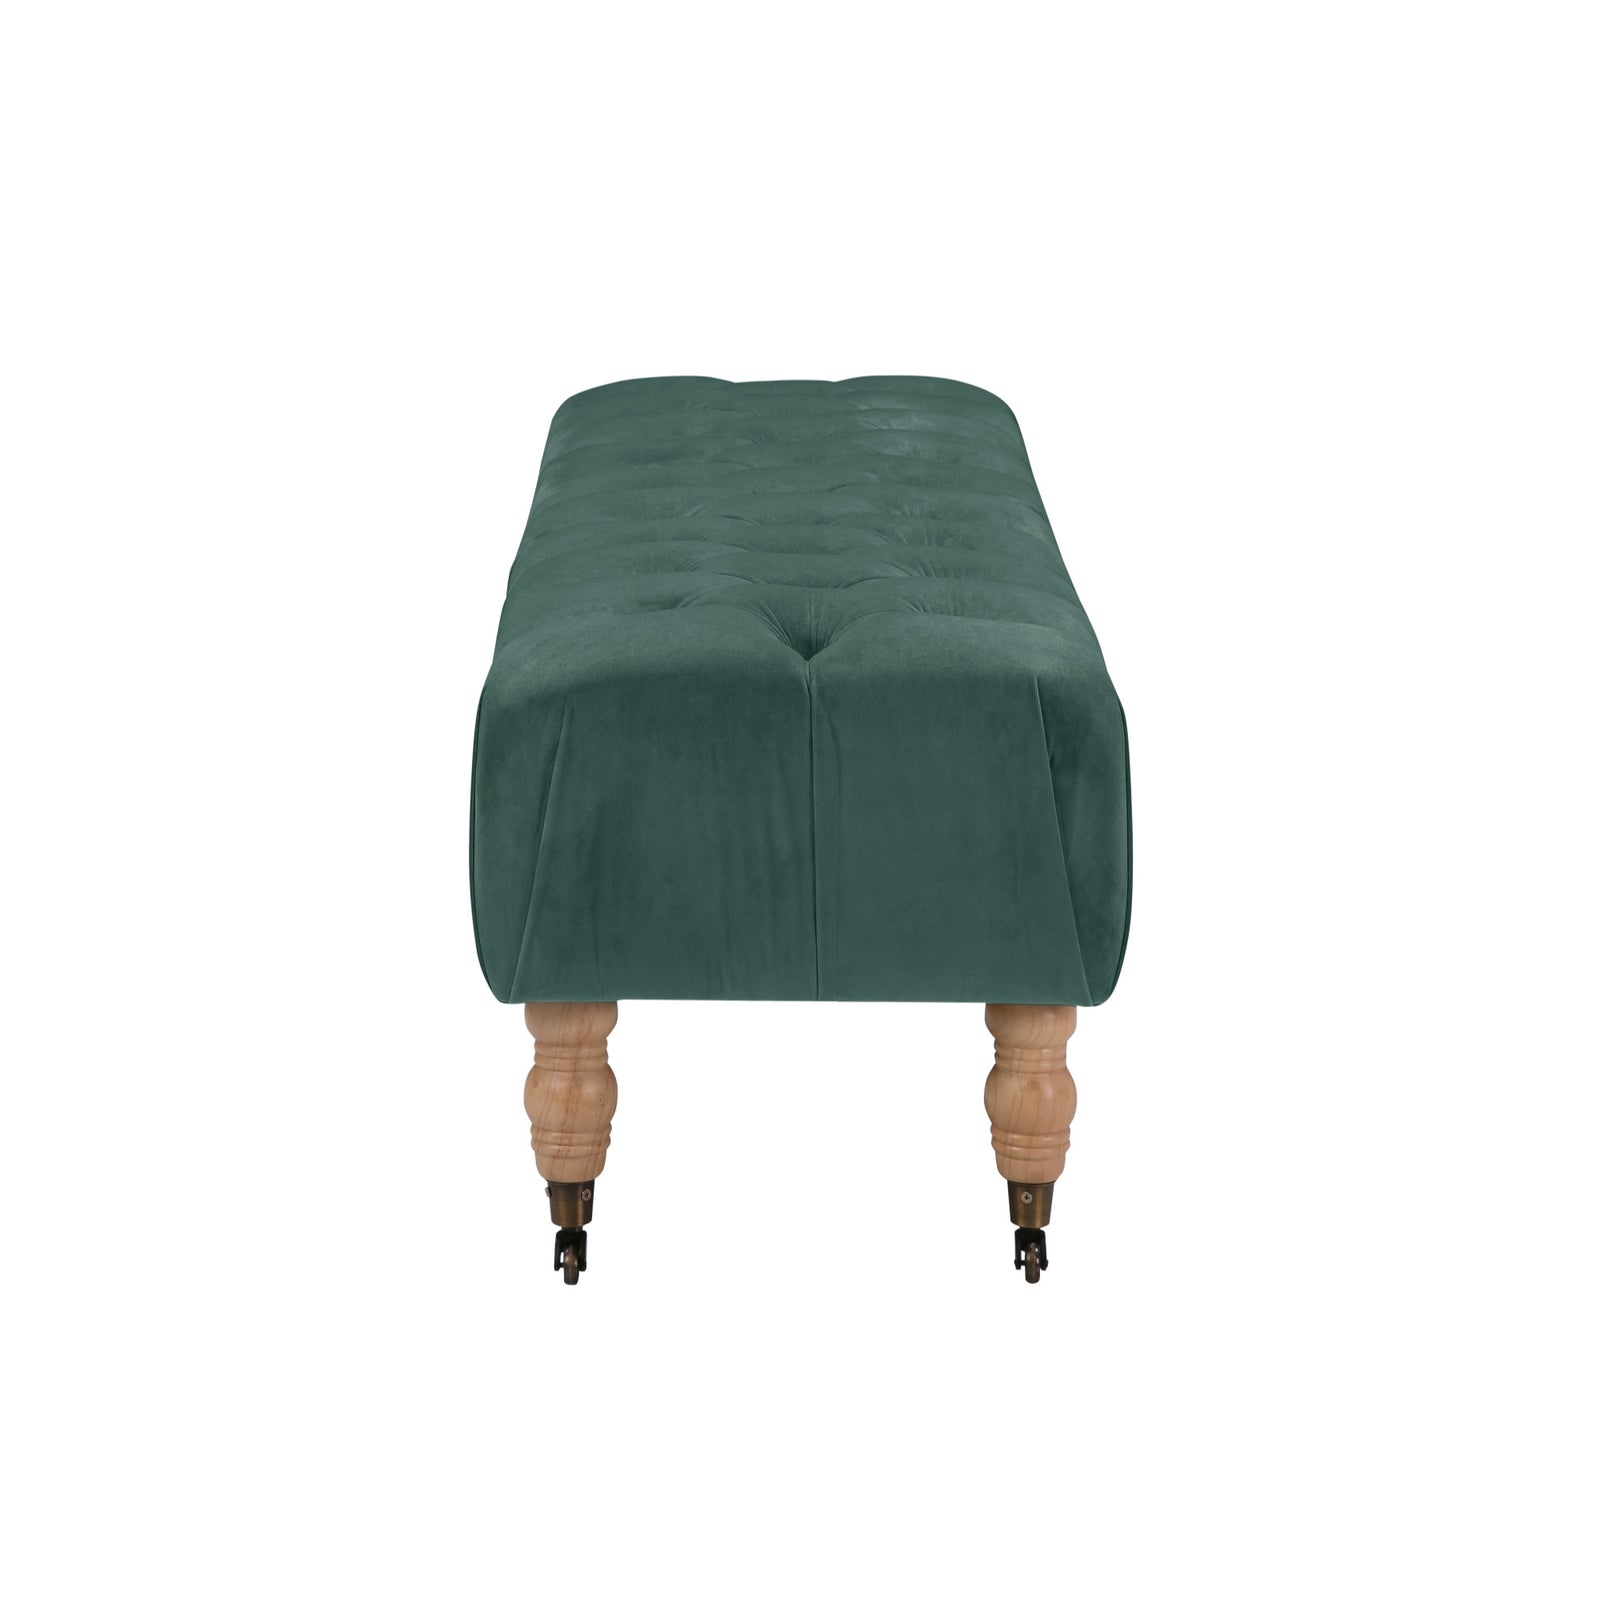 60" Hunter Green And Brown Upholstered Velvet Bench